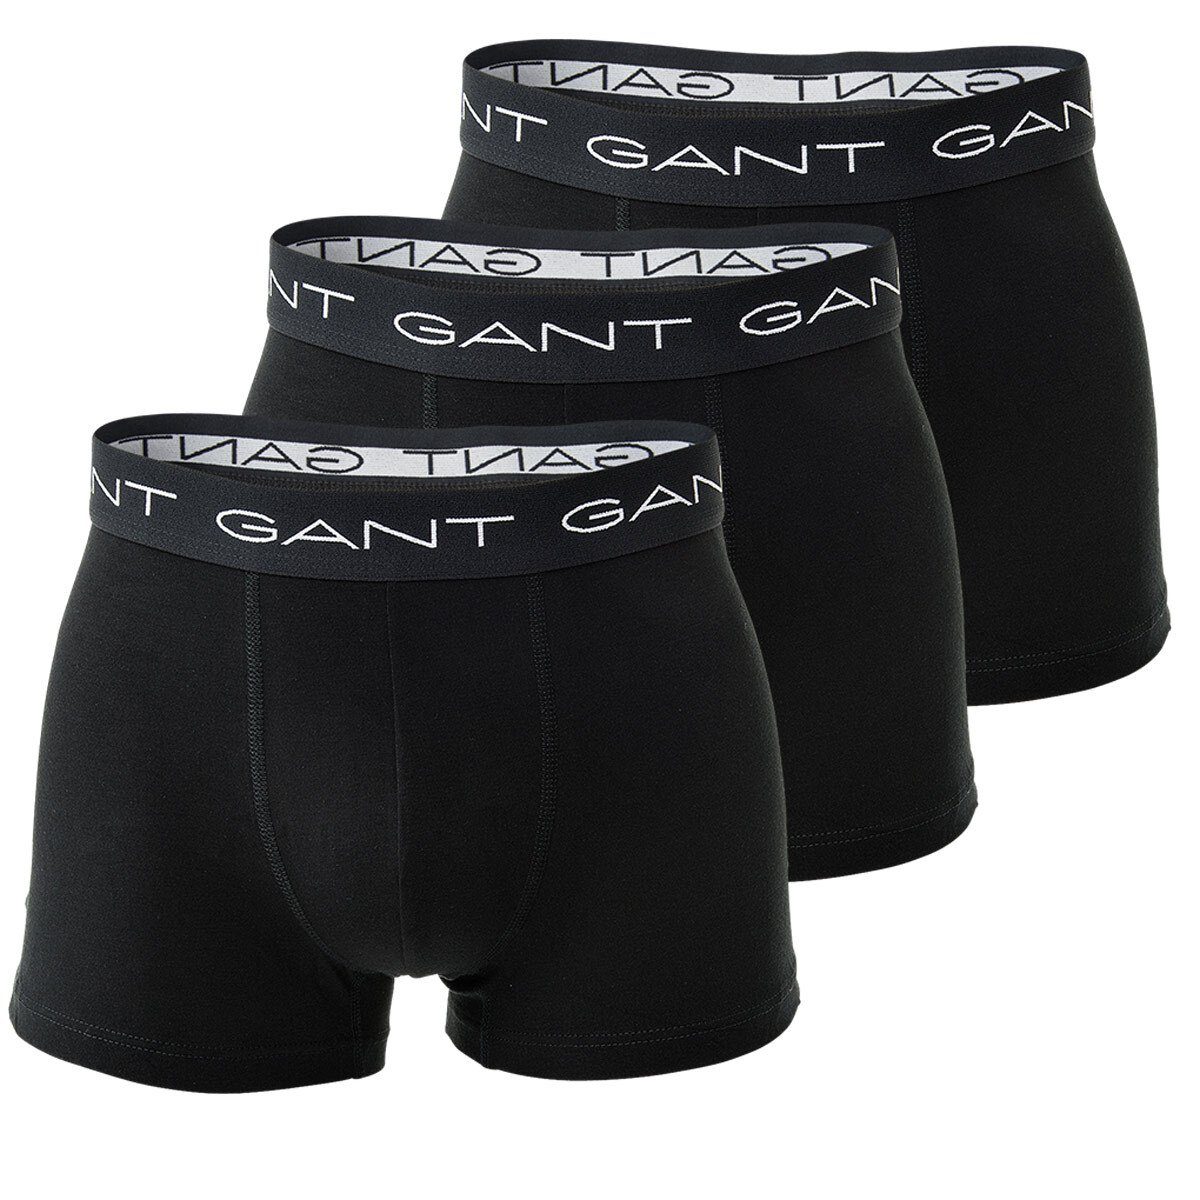 Gant Boxer Herren Boxer Shorts Trunk 3er Pack - Baumwolle